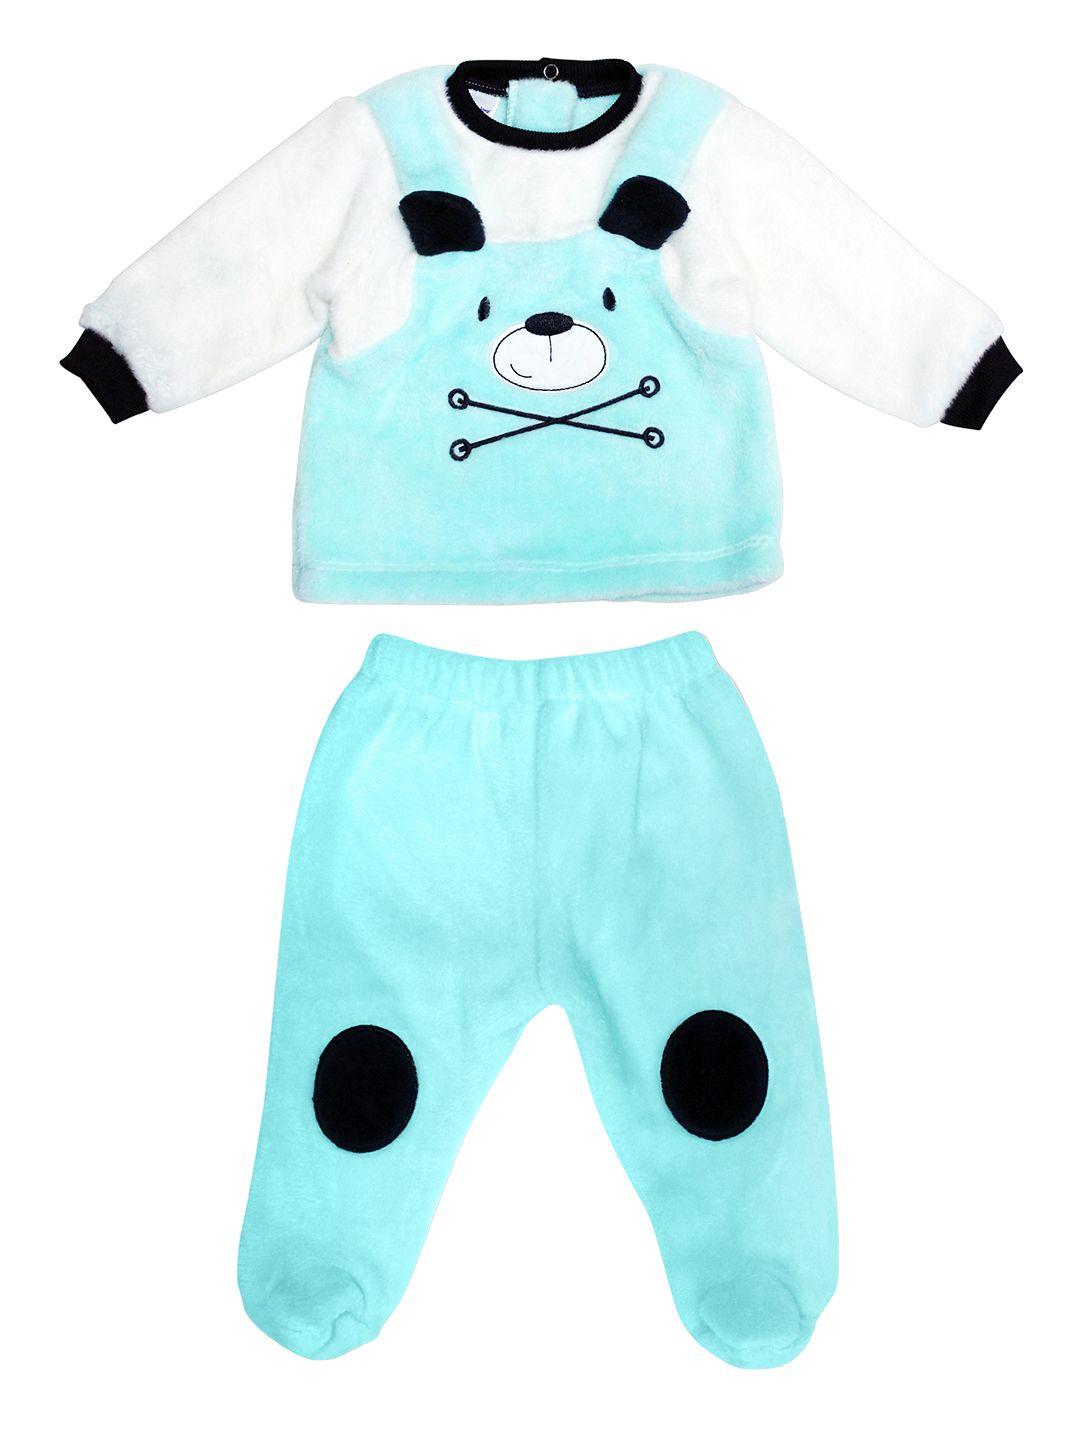 moms love infant boys blue & white applique faux fur cotton clothing set